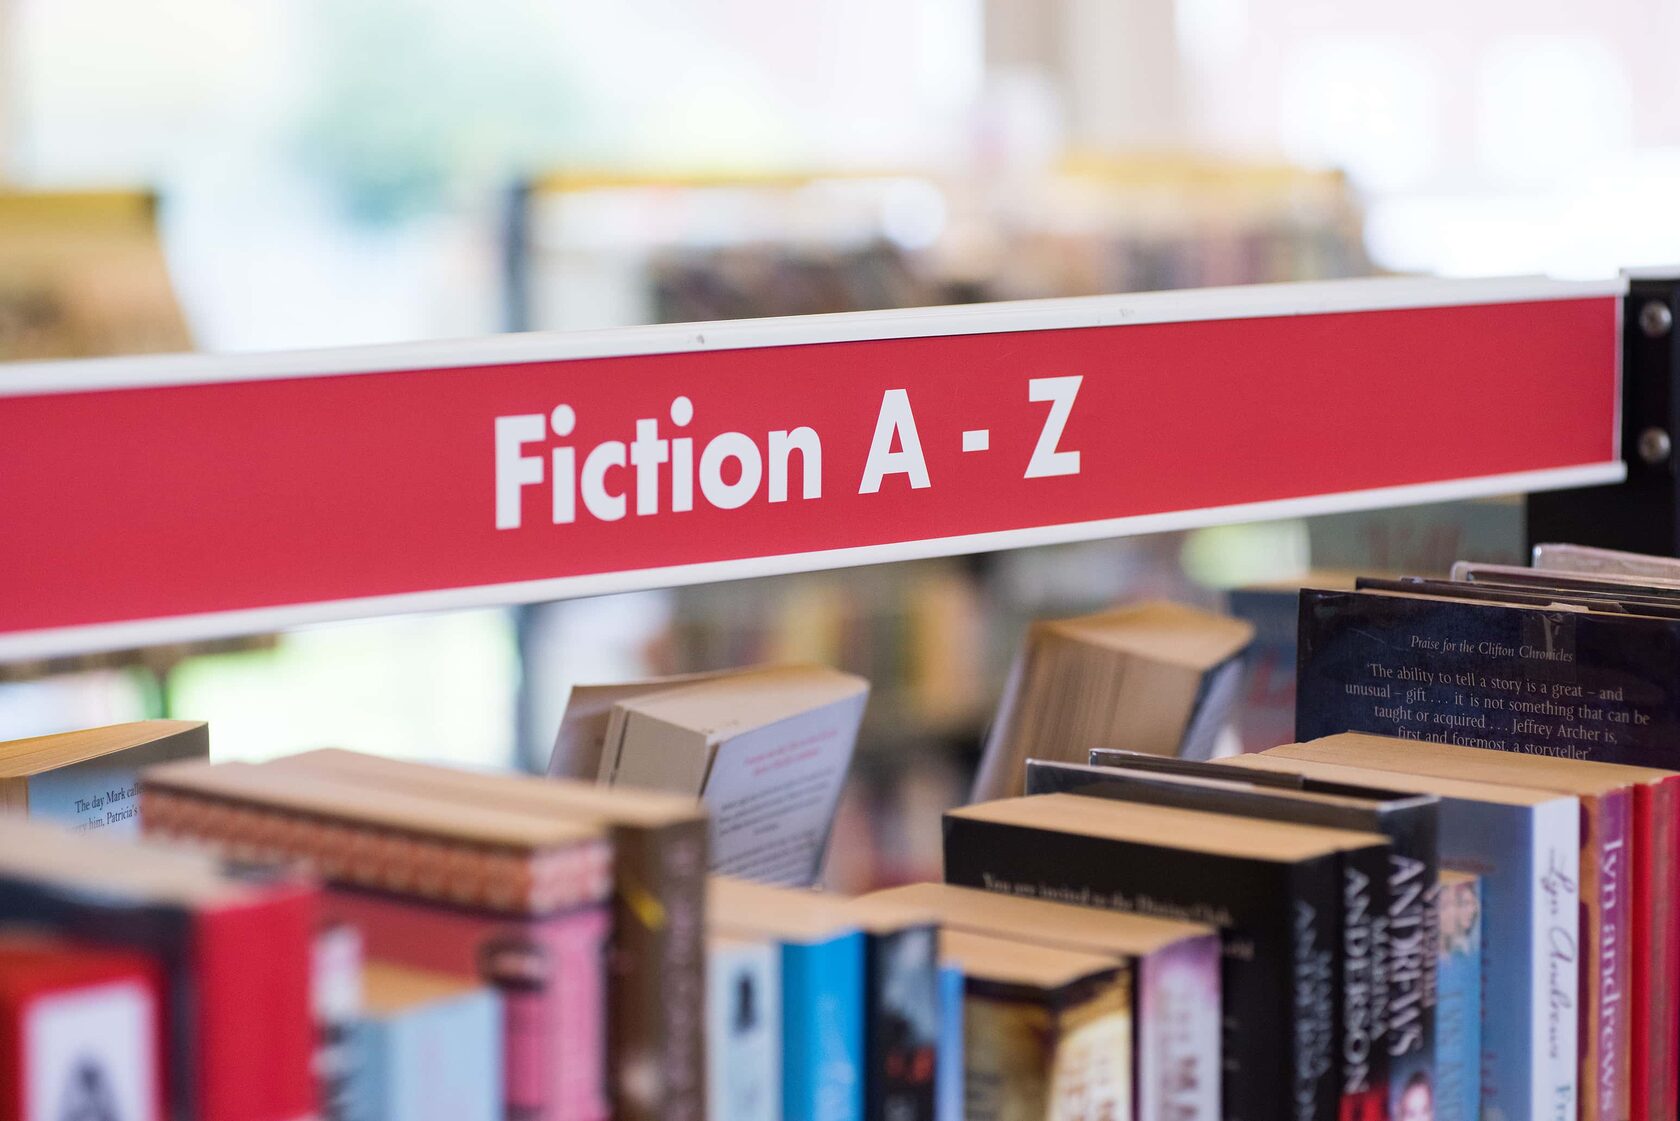 Fiction books are. Книги художественная литература. Нон фикшн. Fiction books. Fiction книги.